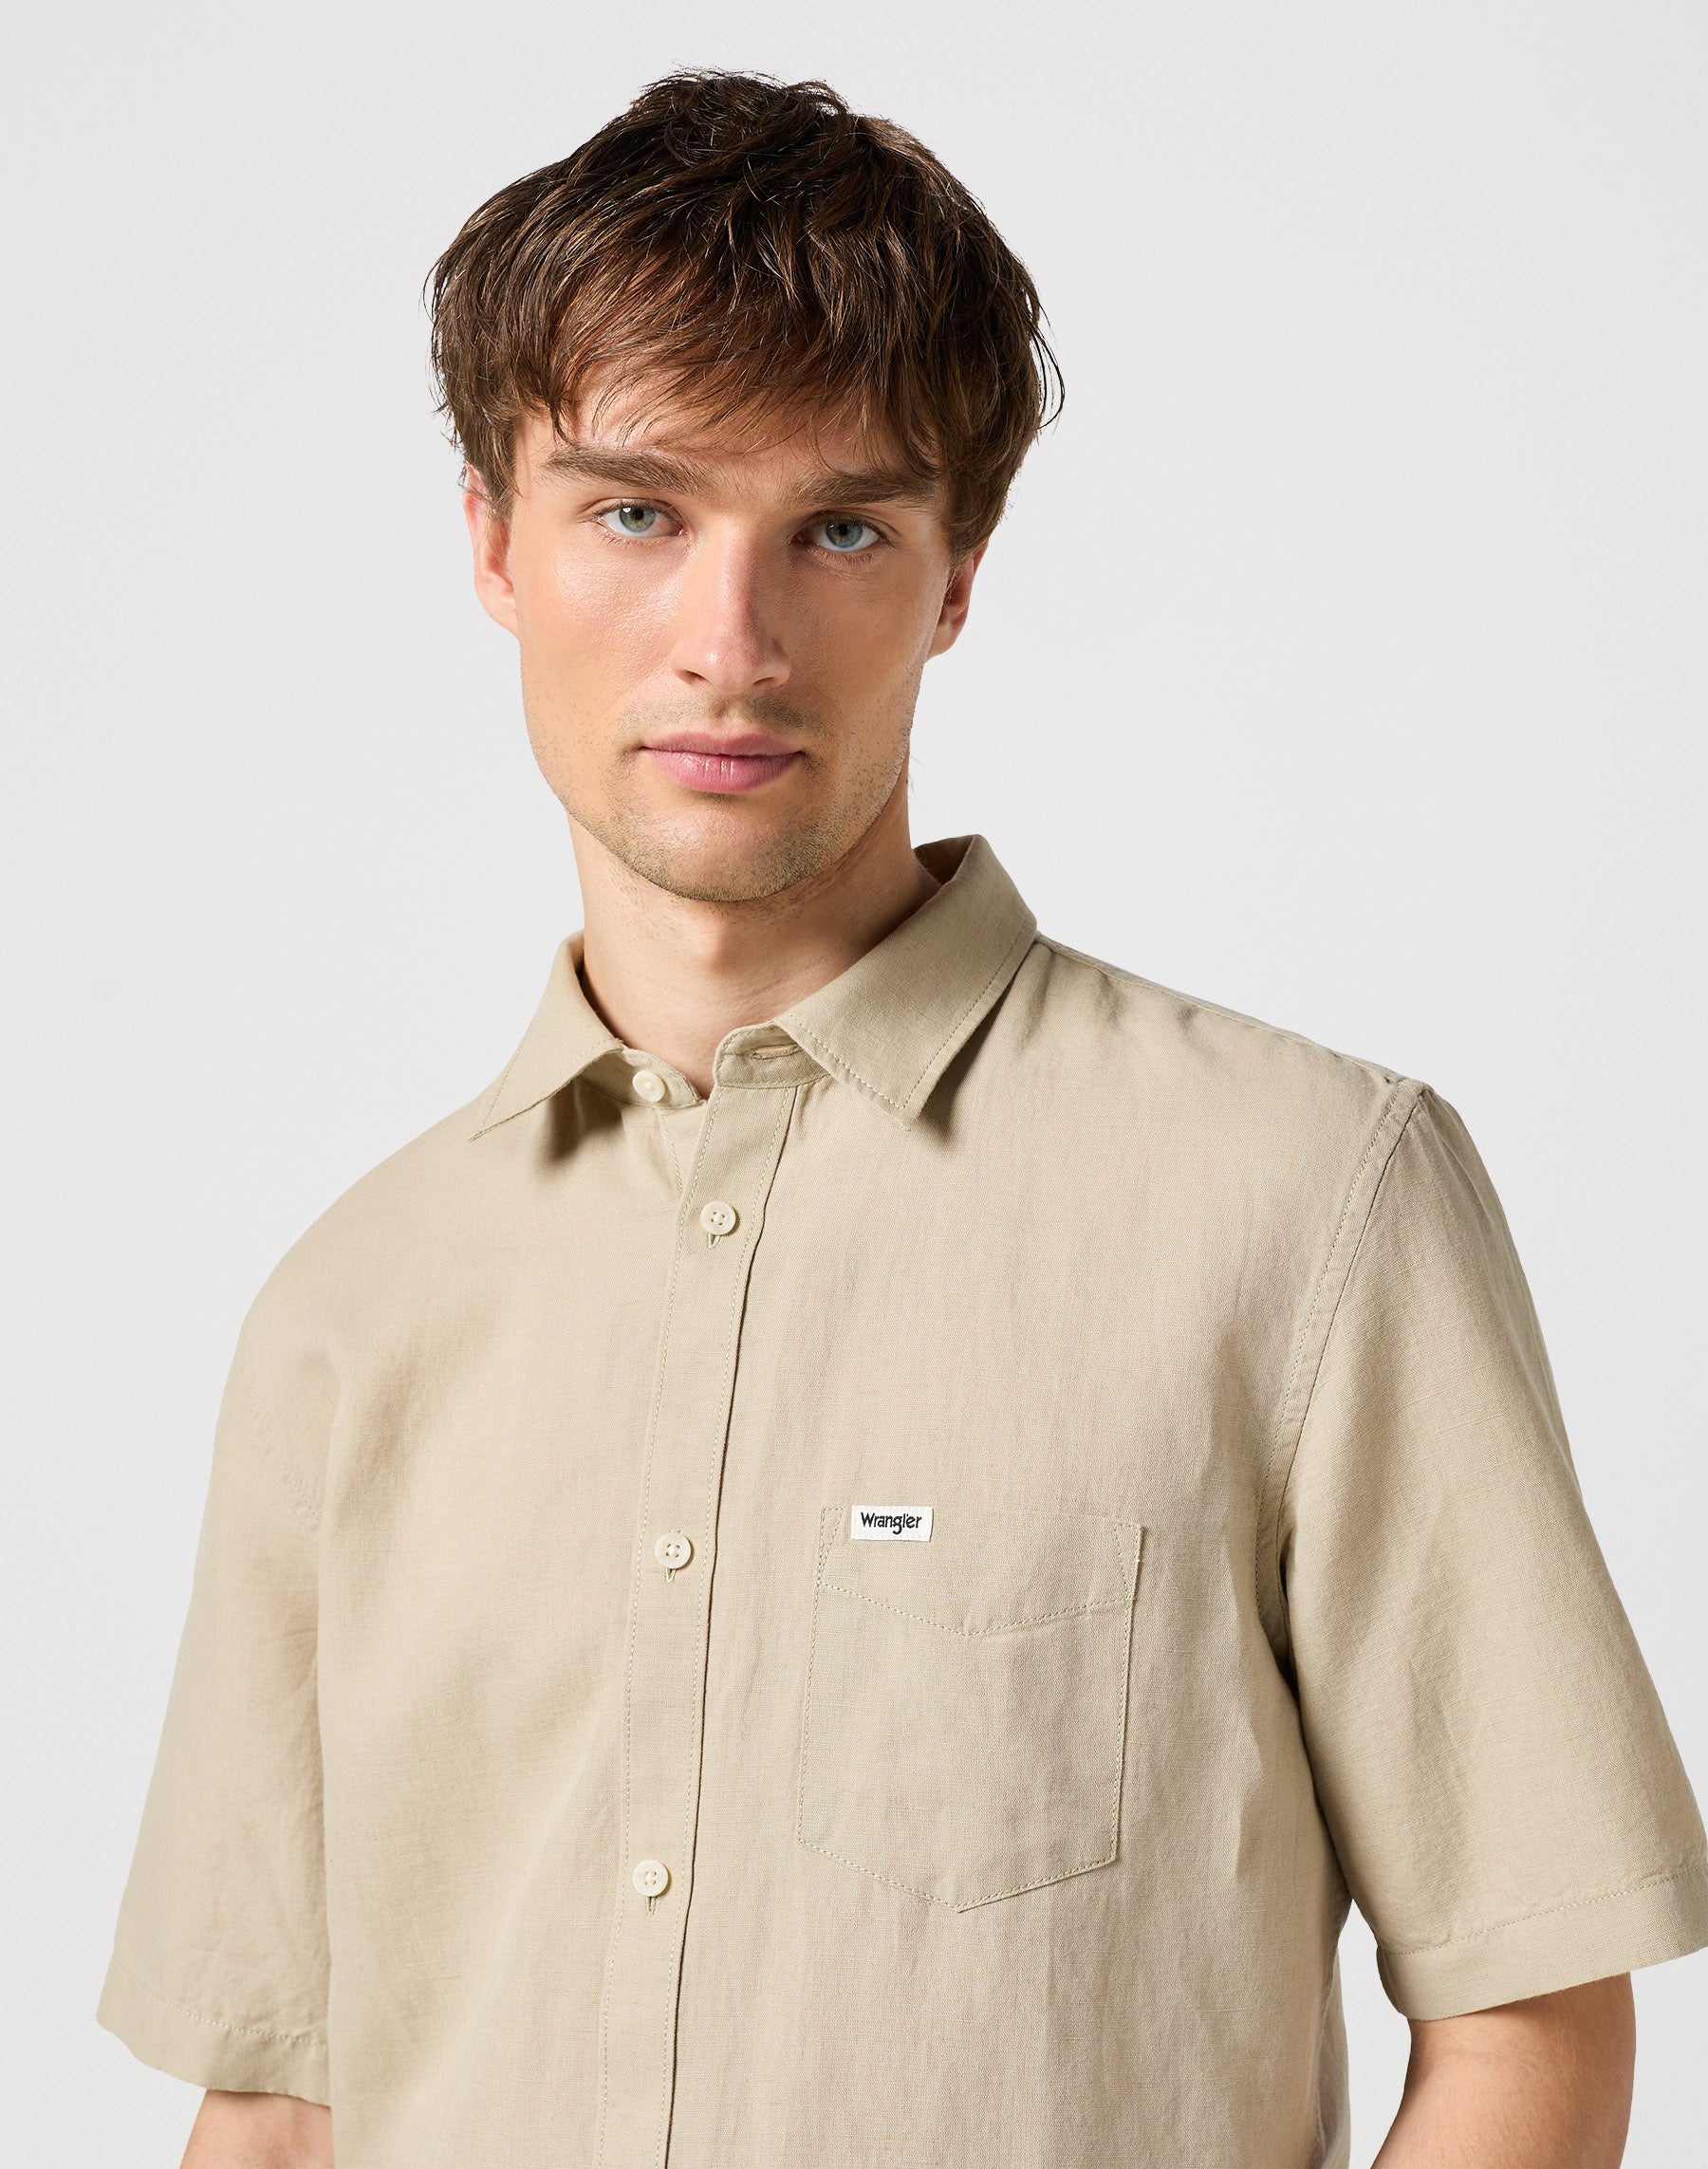 One Pocket Shirt in Plaza Taupe Hemden Wrangler   